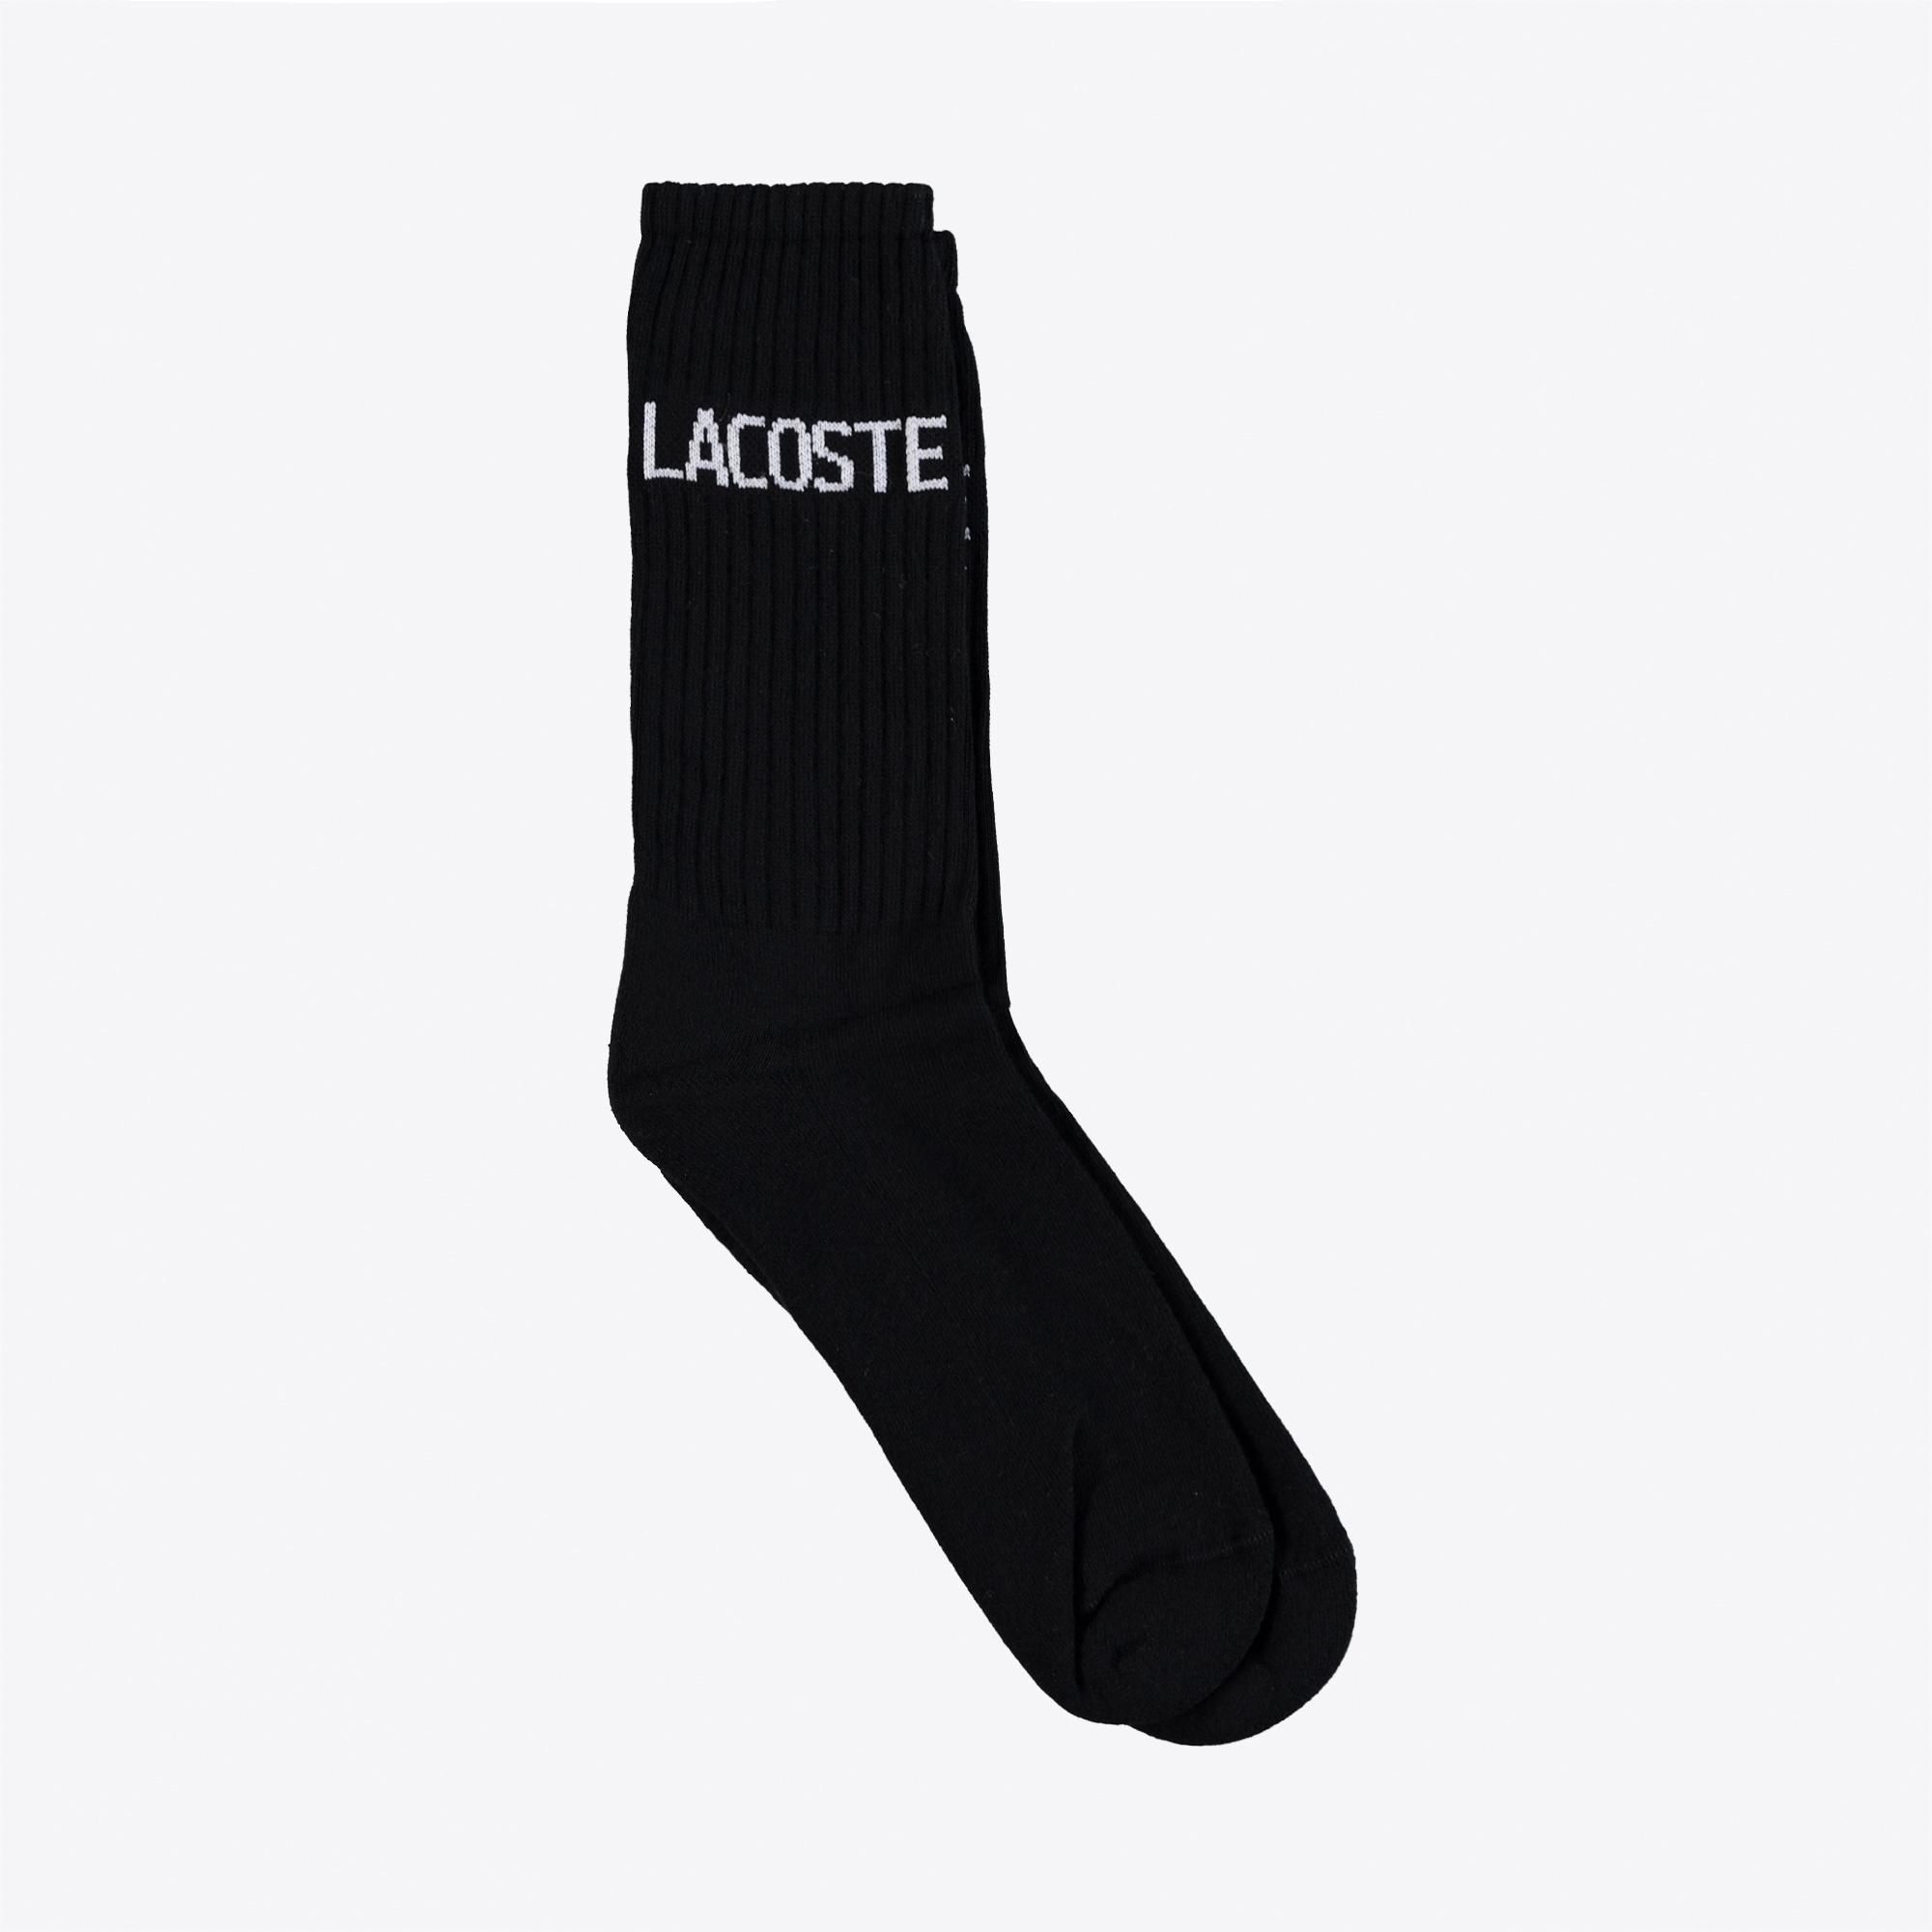 Lacoste Unisex Baskılı Siyah Çorap. 2